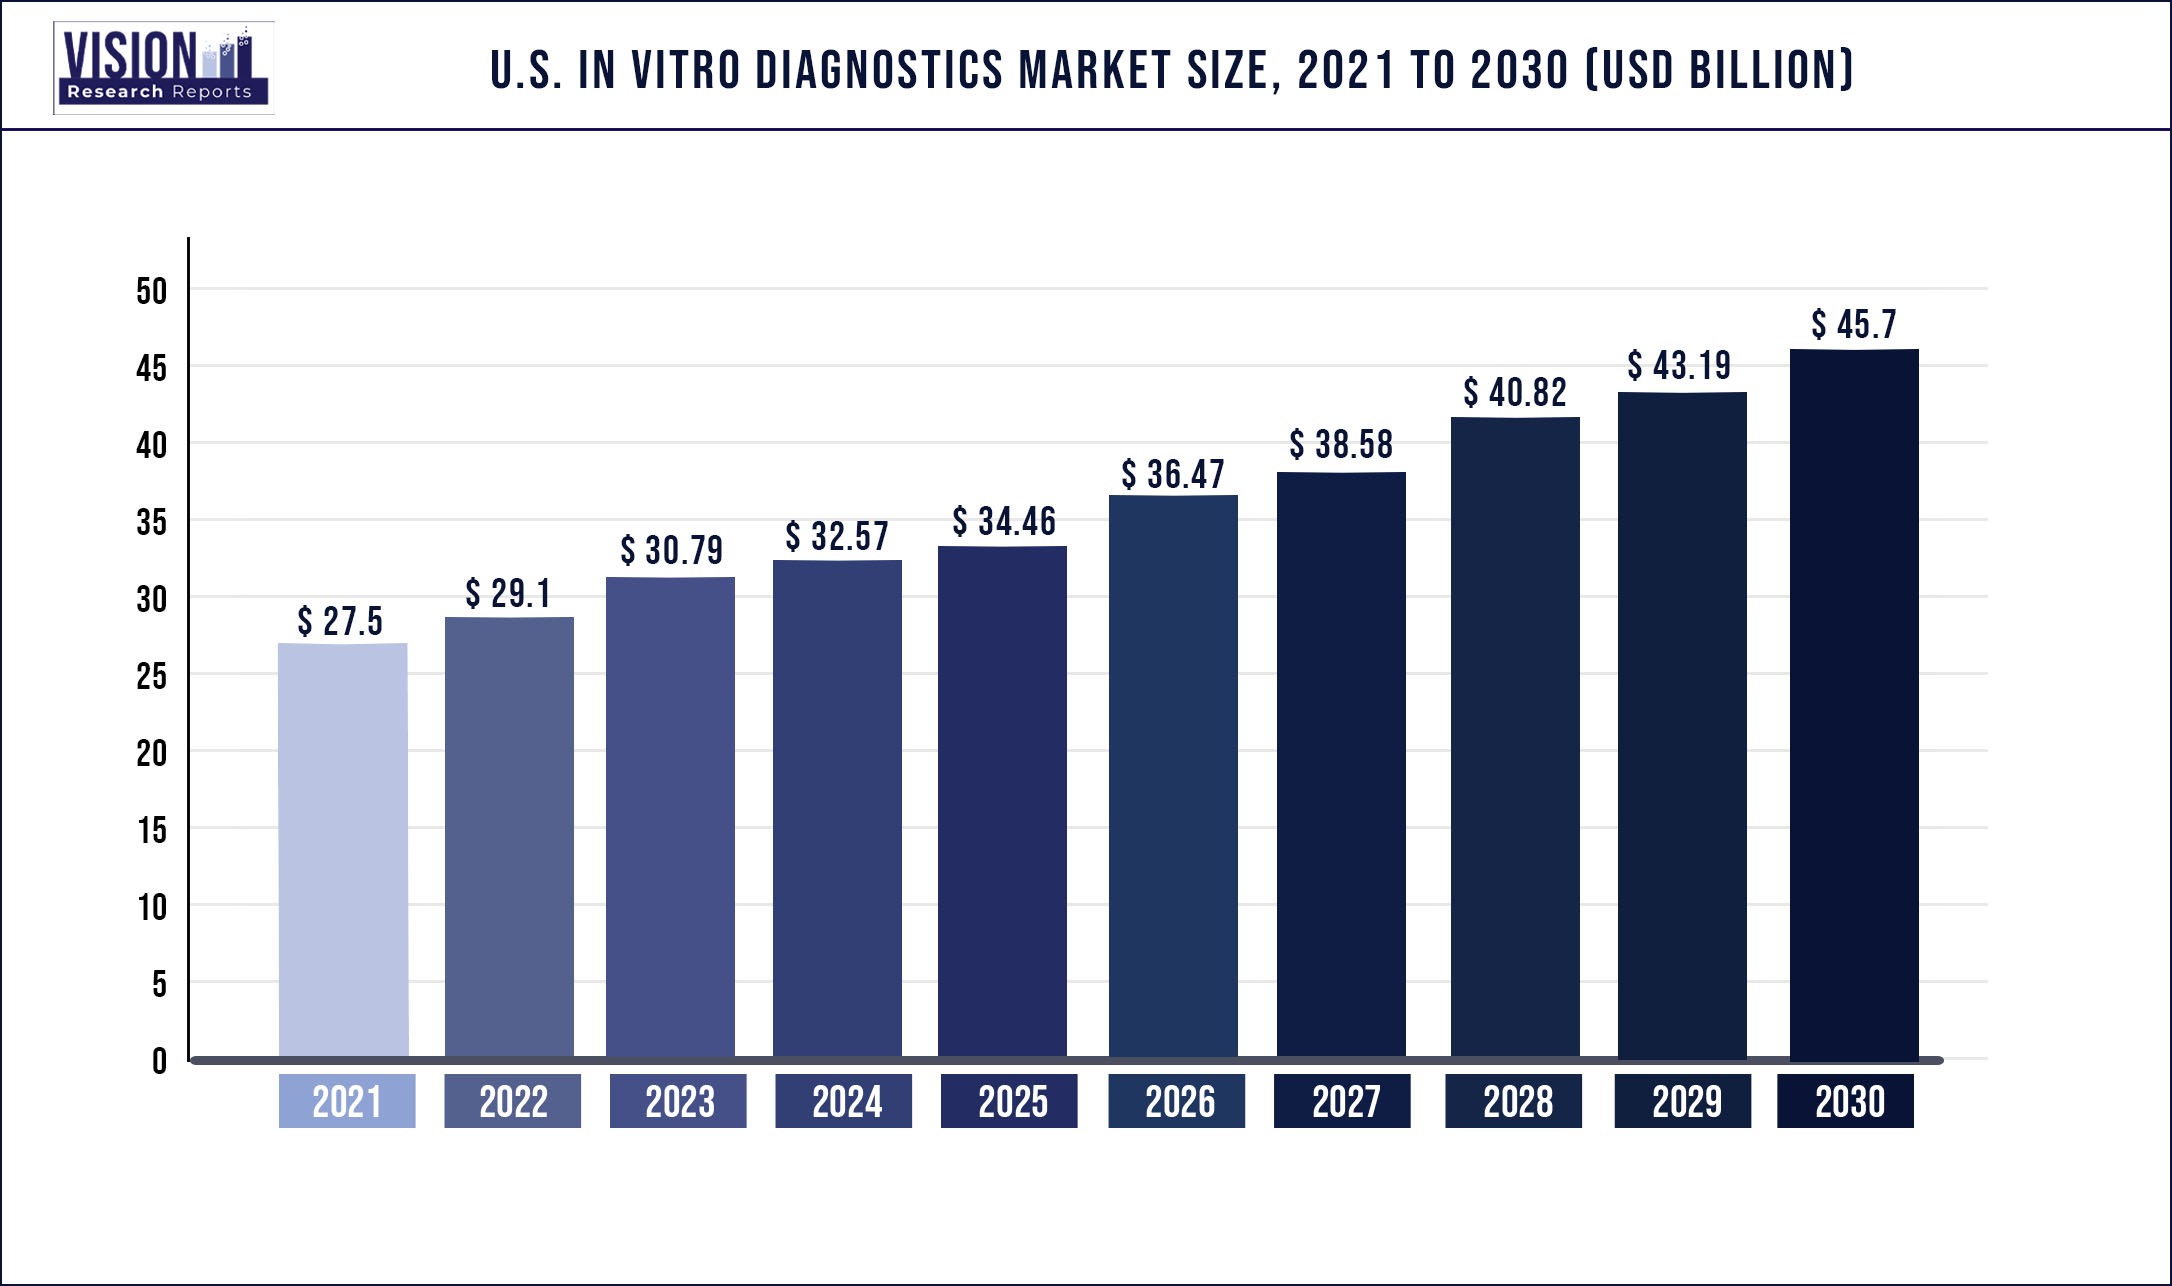 U.S. In Vitro Diagnostics Market Size 2021 to 2030